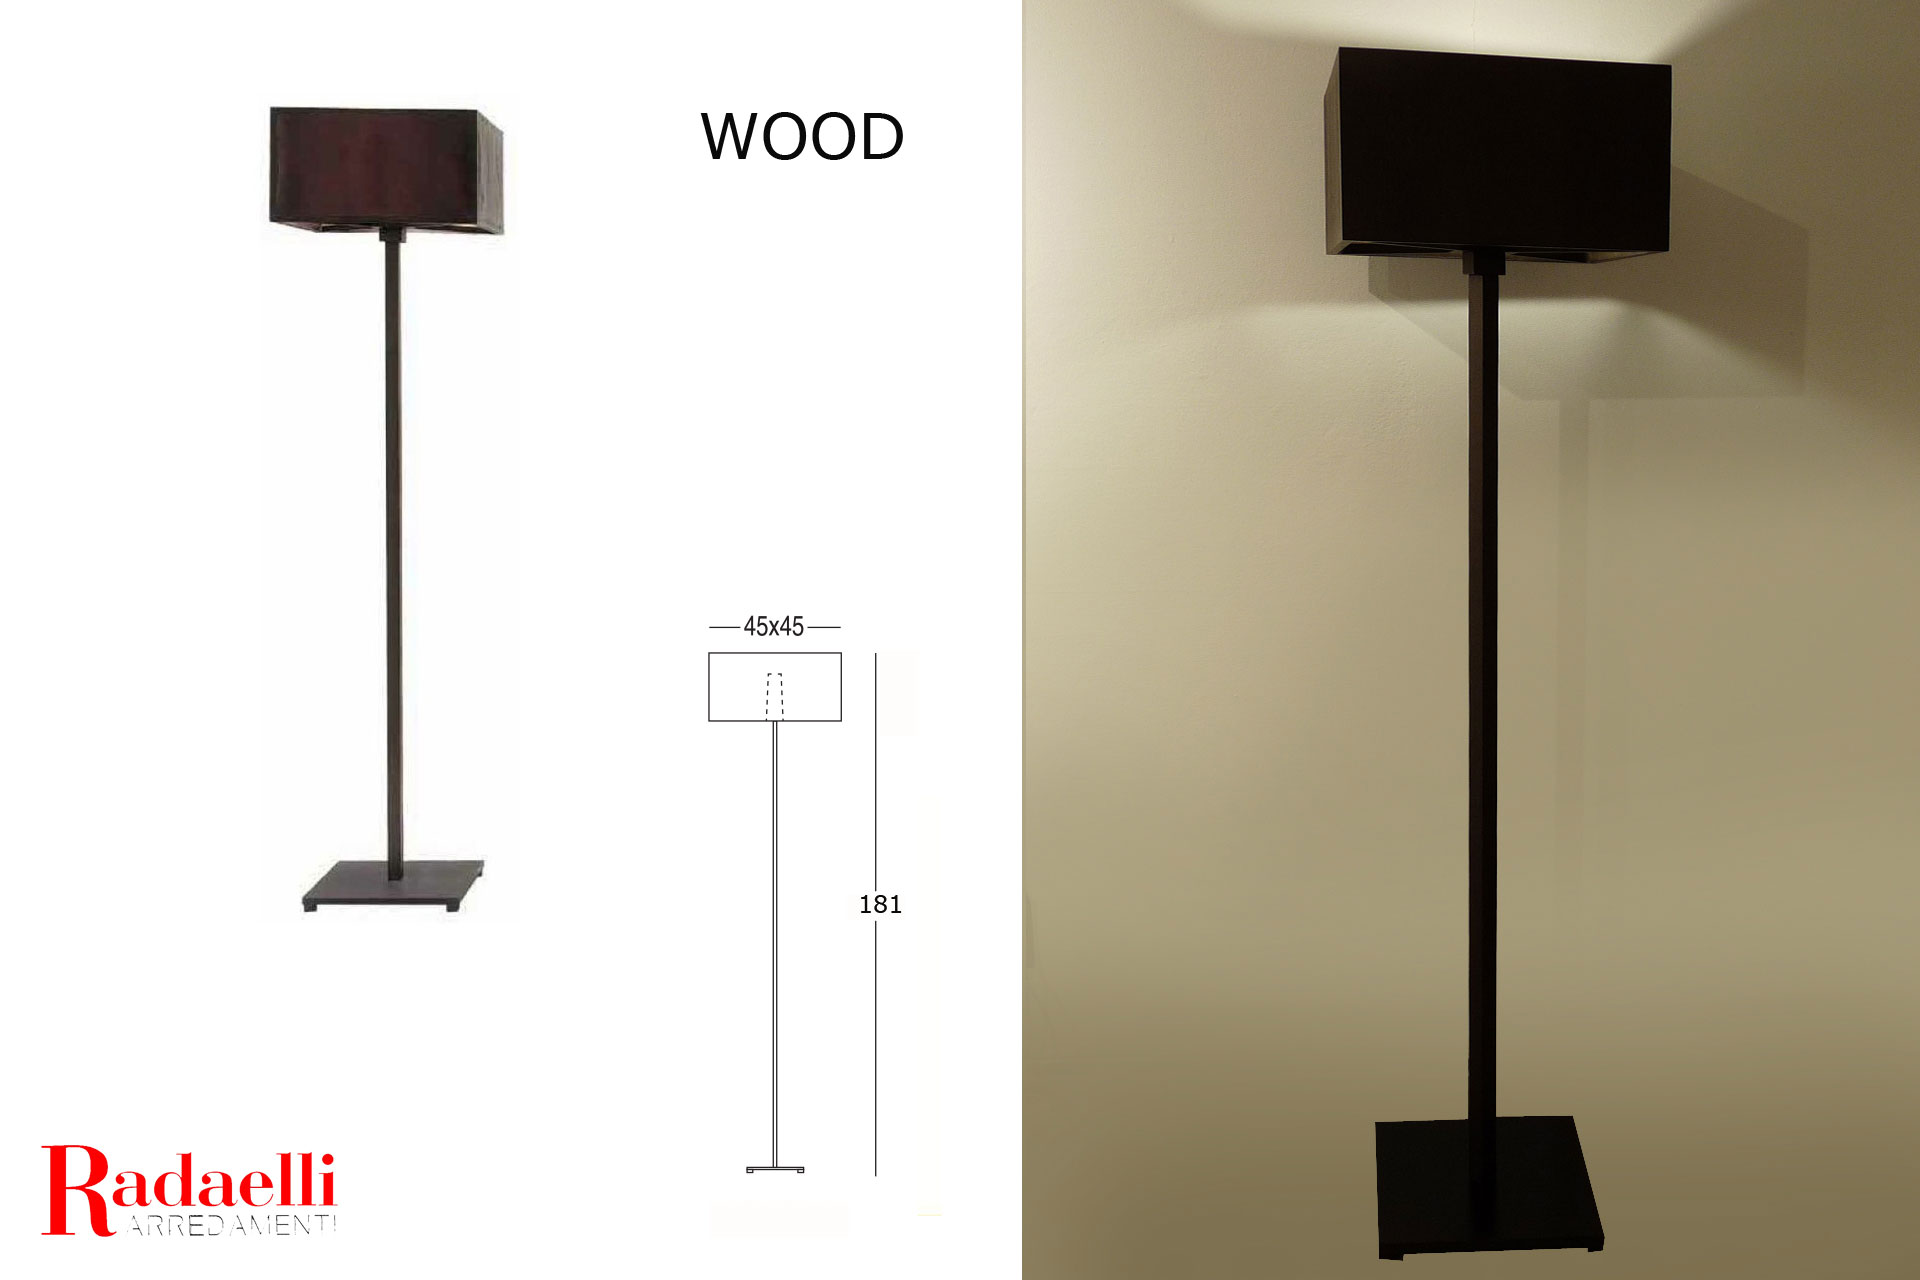 Lampada wood-penta